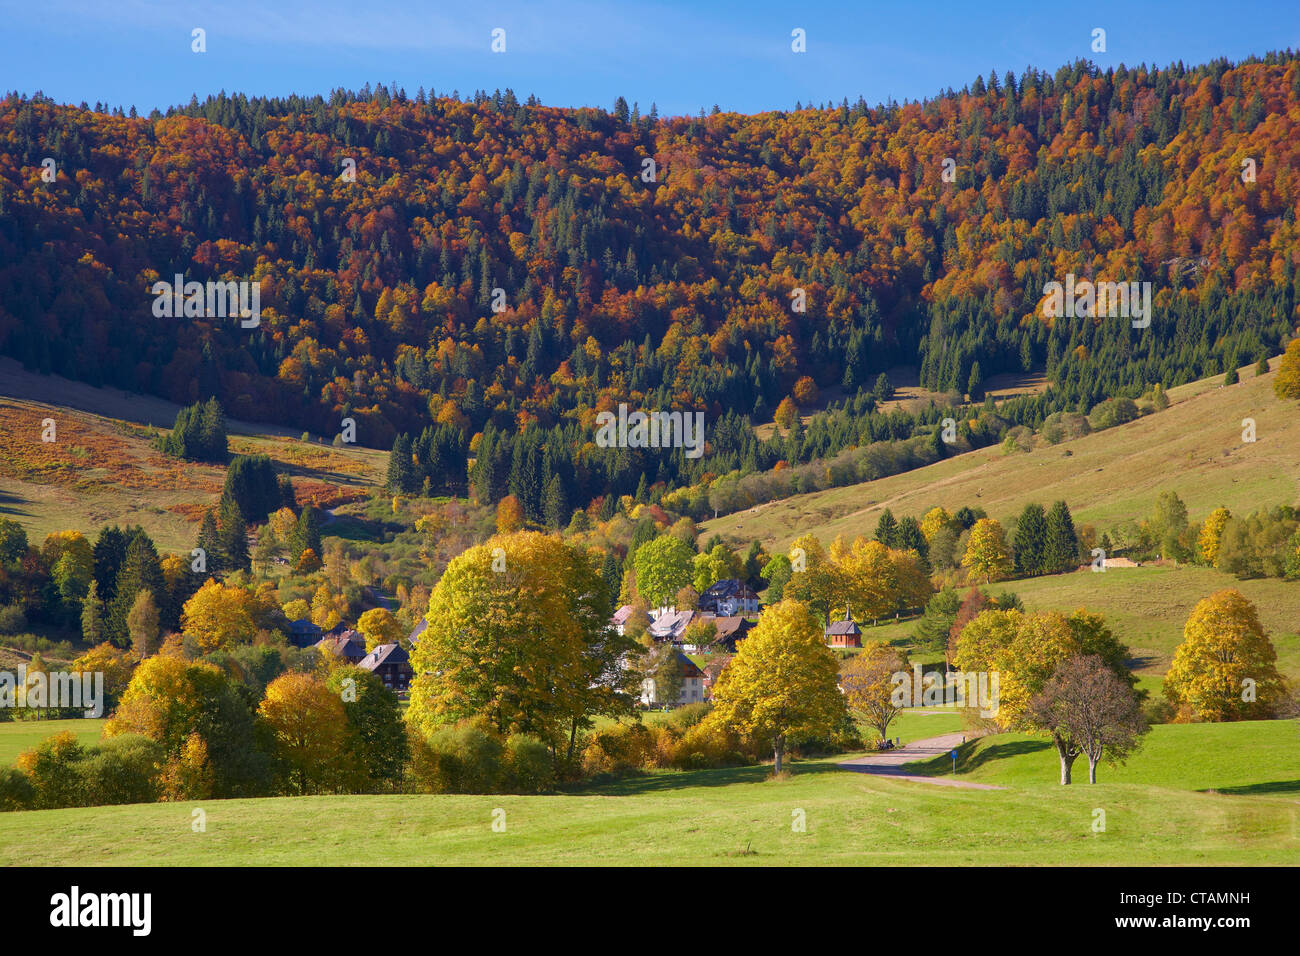 Bernau Hof en automne, partie sud de la Forêt Noire, Forêt Noire, Bade-Wurtemberg, Allemagne, Europe Banque D'Images